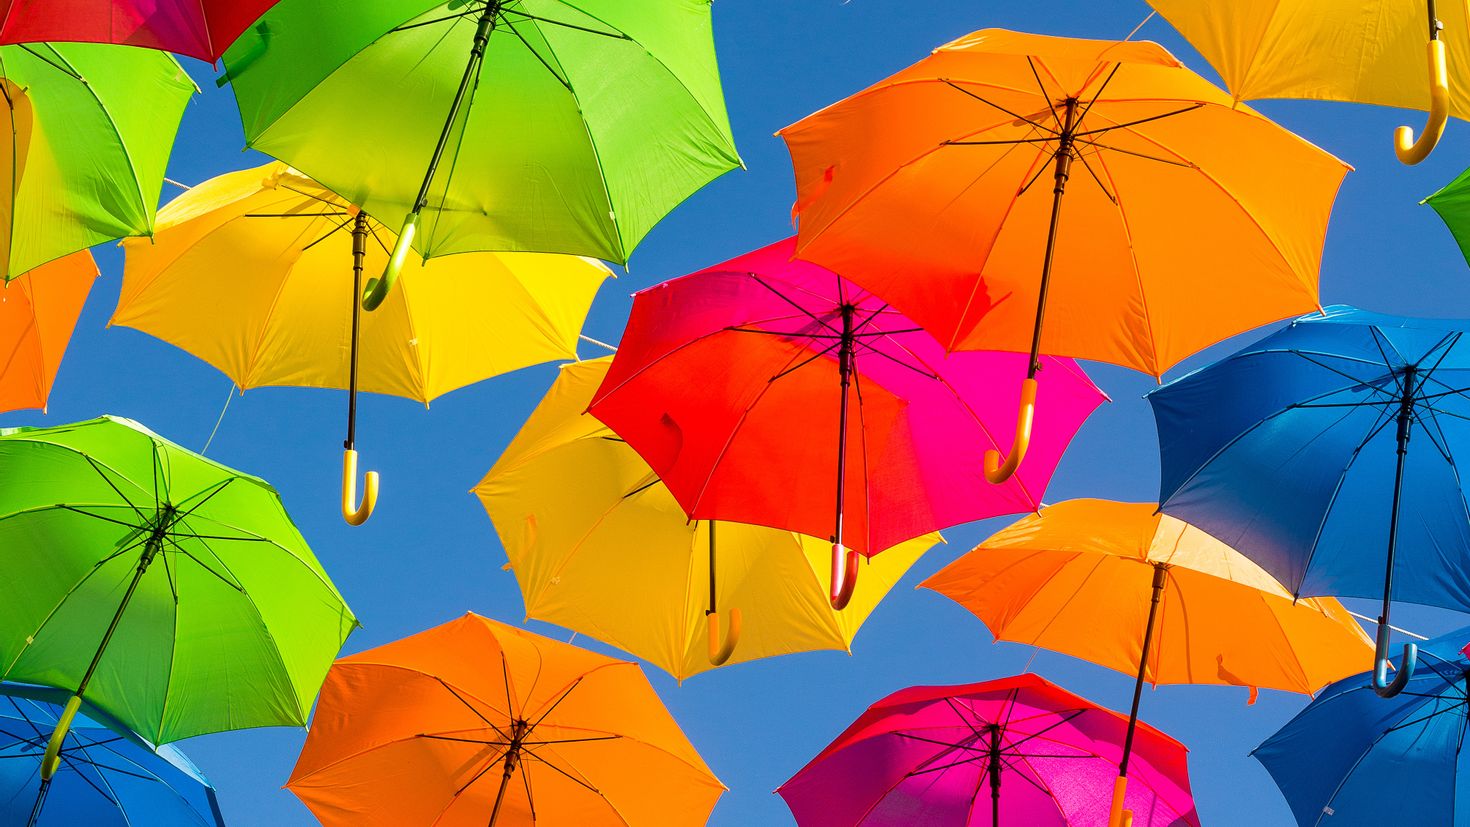 Обои зонтика. Разноцветные зонтики. Зонтики яркие. Красочный зонтик. Разные зонтики.